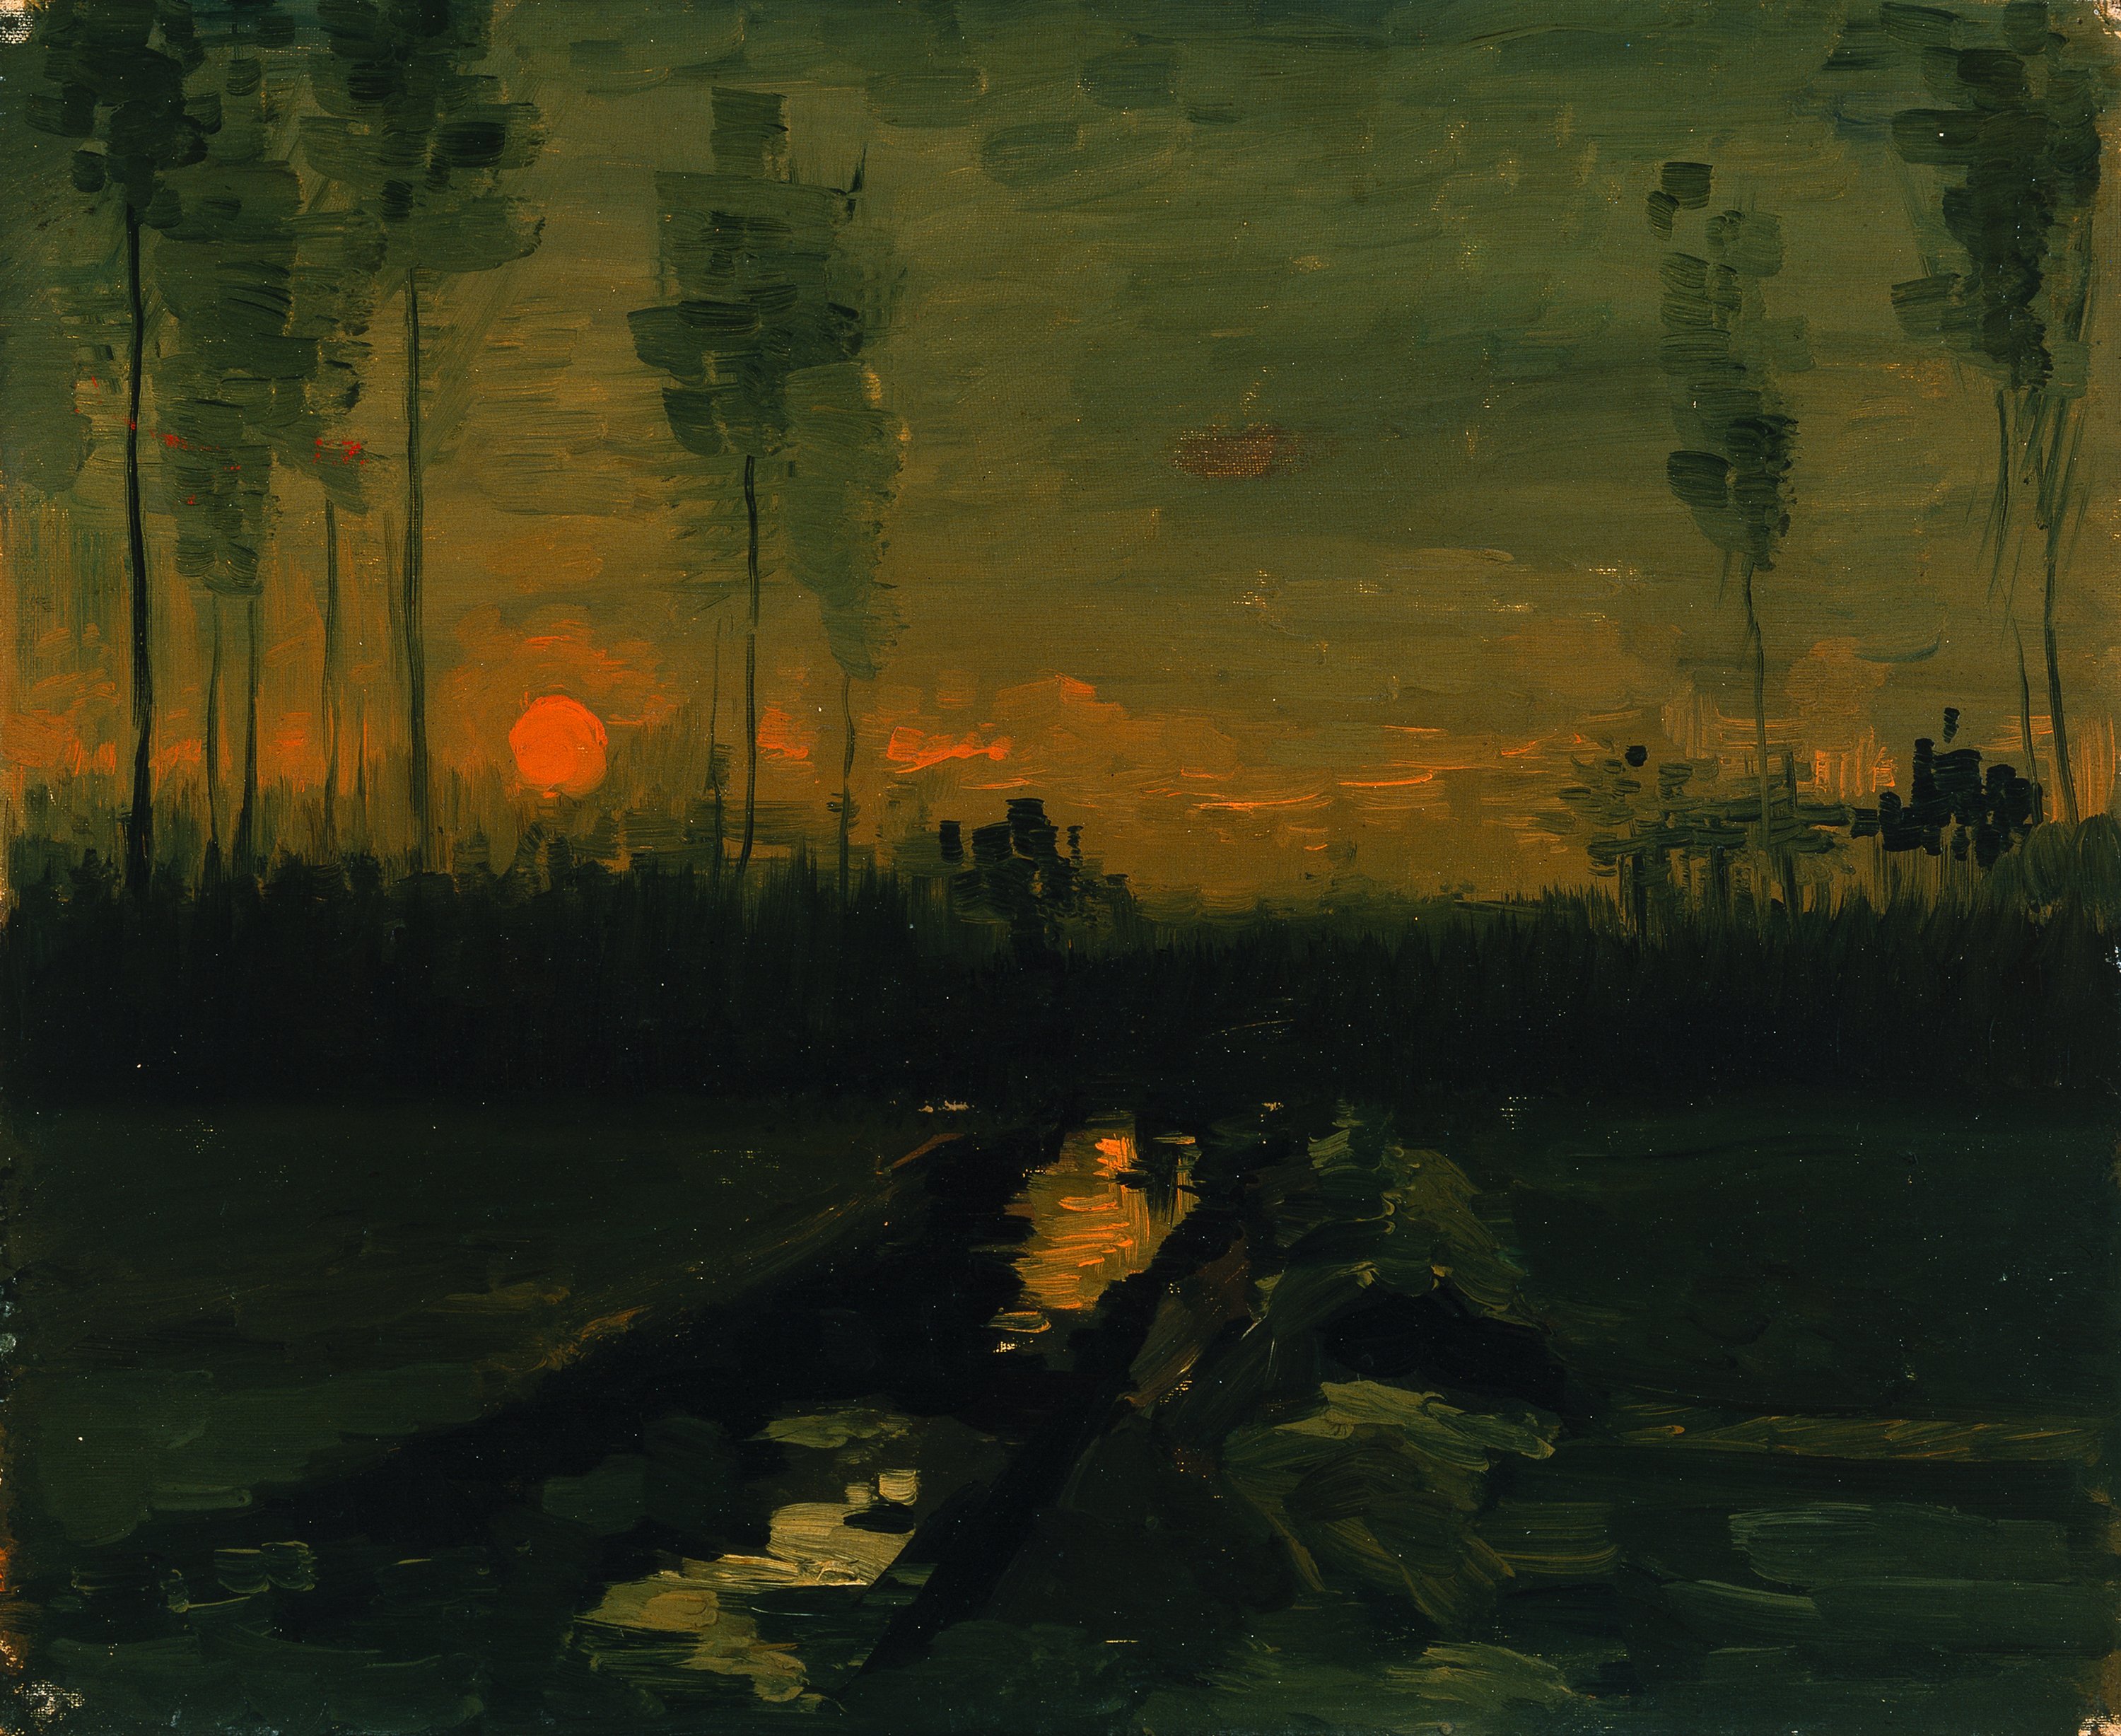 Pintura al óleo sobre lienzo puesta de sol por la tarde. el arte